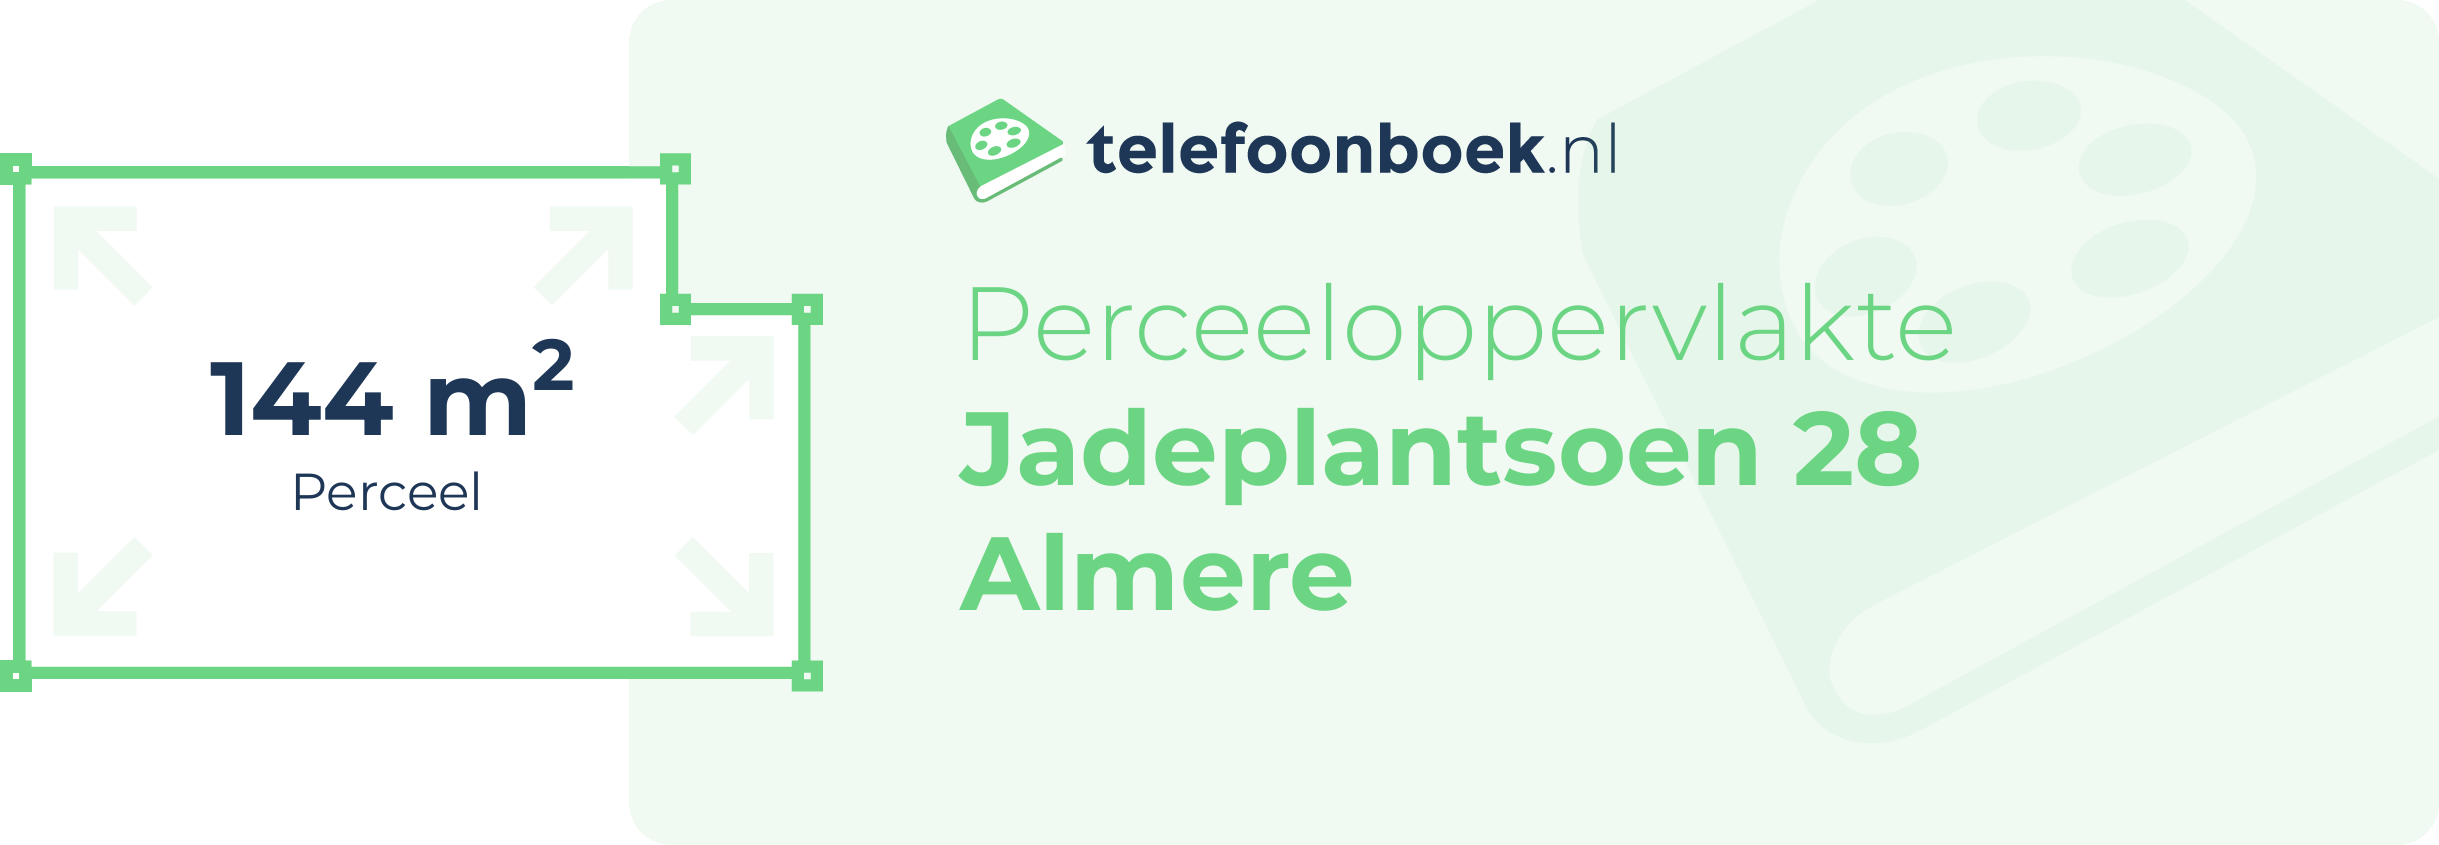 Perceeloppervlakte Jadeplantsoen 28 Almere